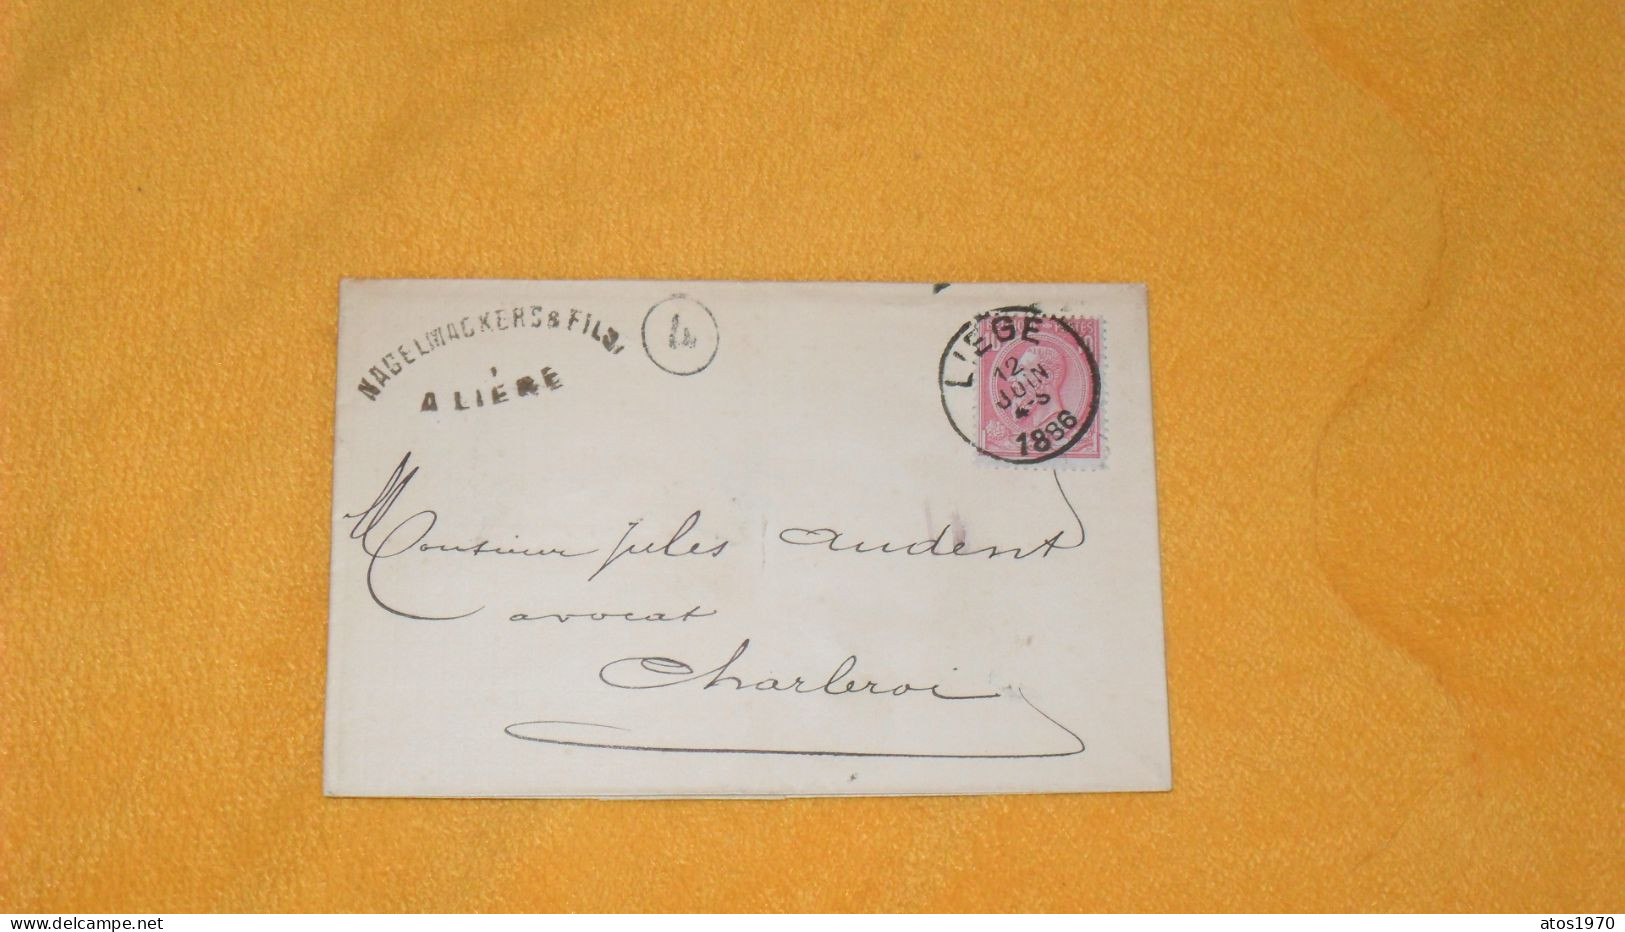 LETTRE LSC ANCIENNE DE 1886.../ NAGELMACKERS & FILS A LIEGE..CACHETS LIEGE POUR CHARLEROI + TIMBRE... - 1884-1891 Léopold II